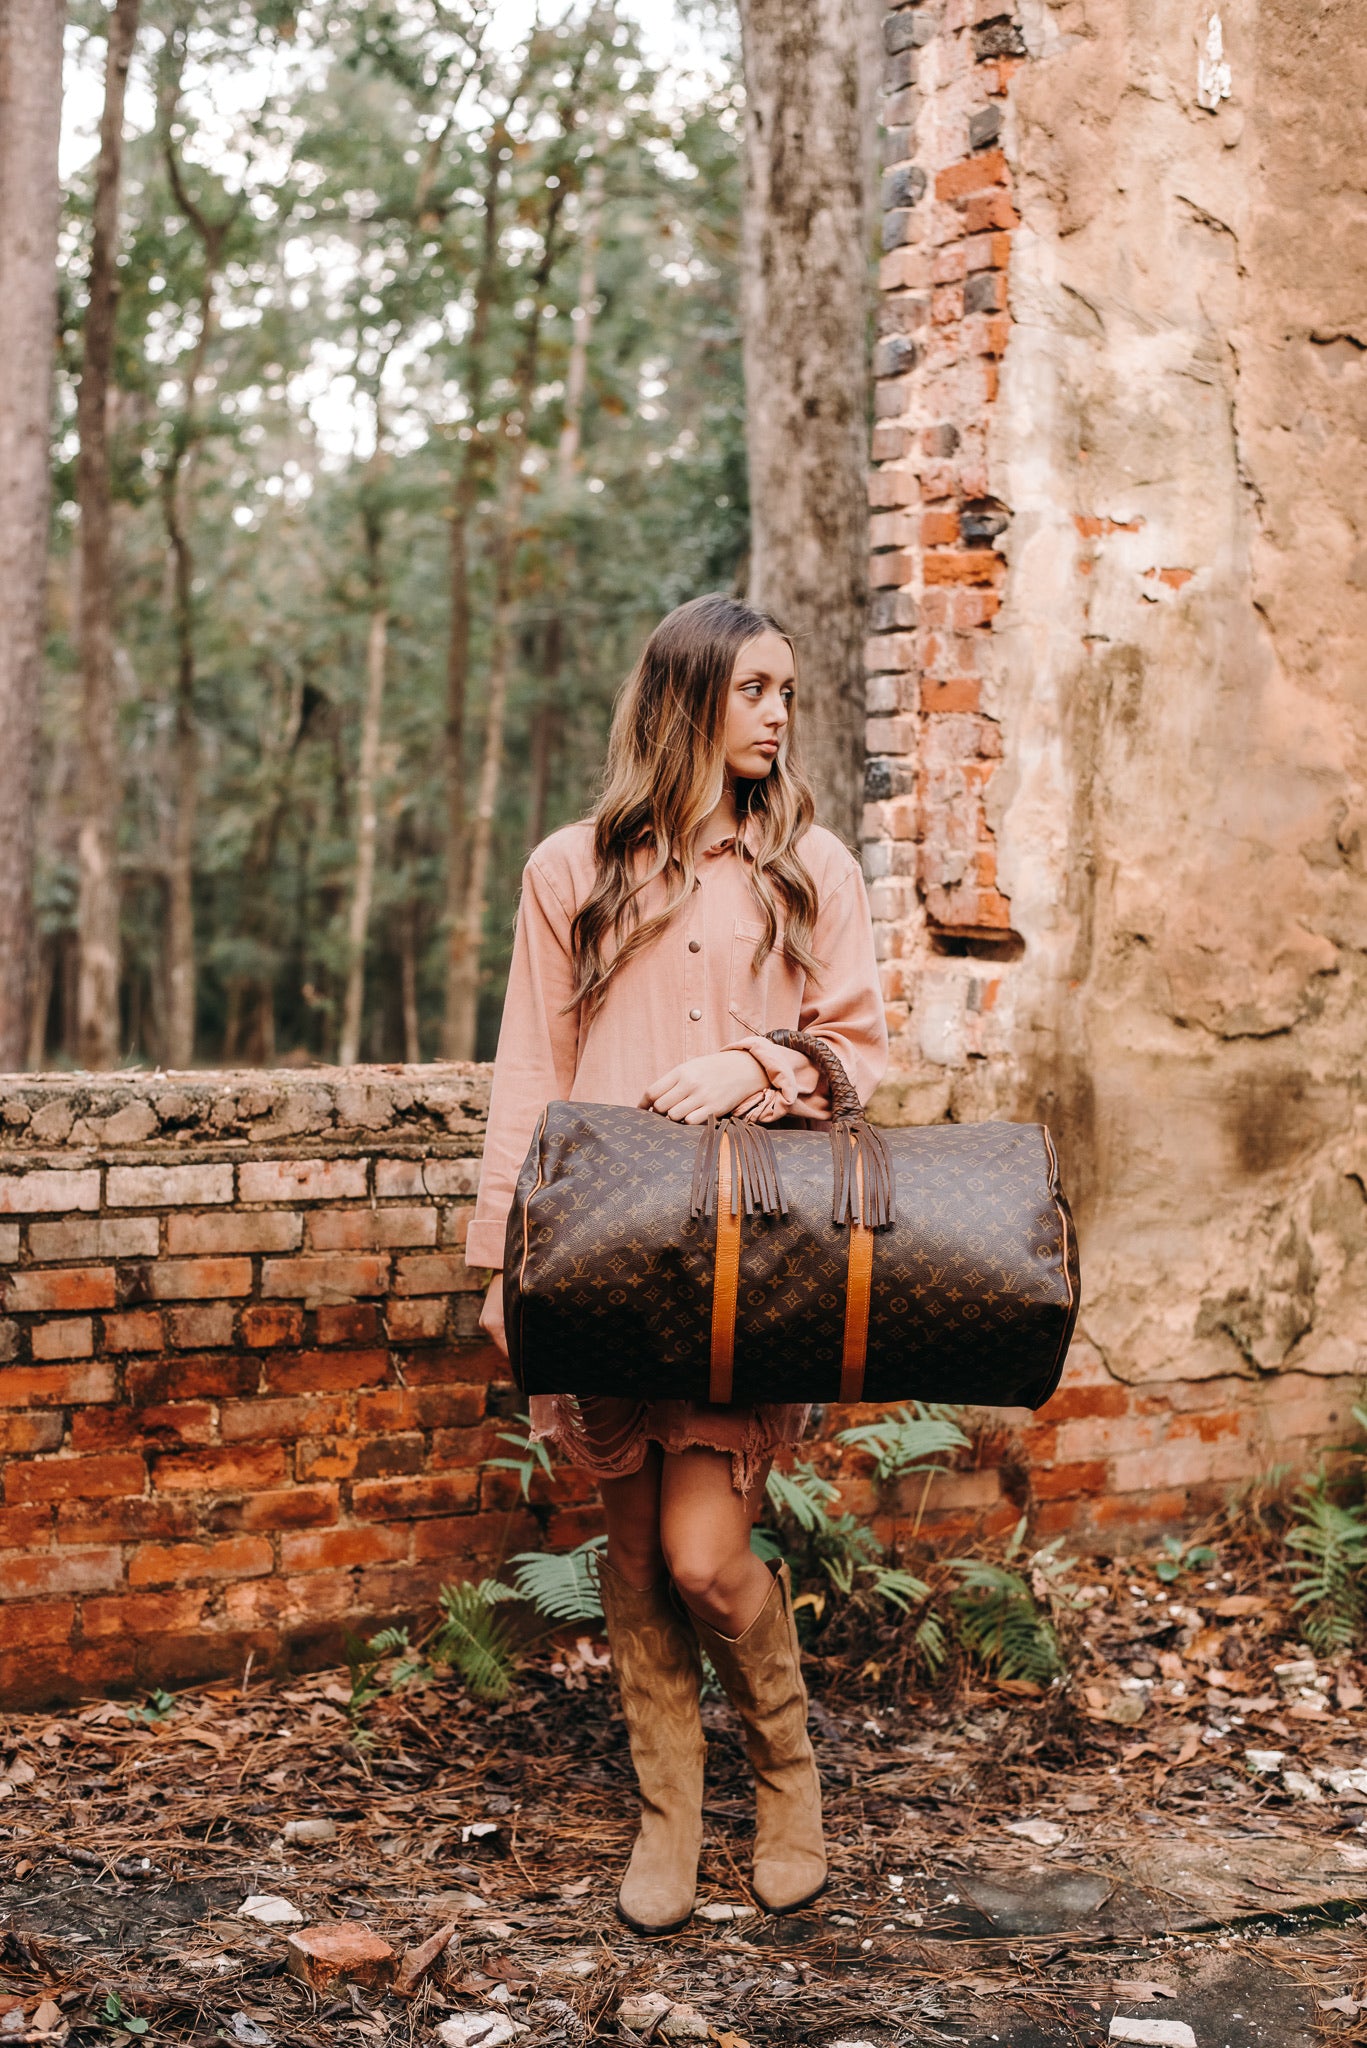 The Duffle Bag – Rustic Revival Bags